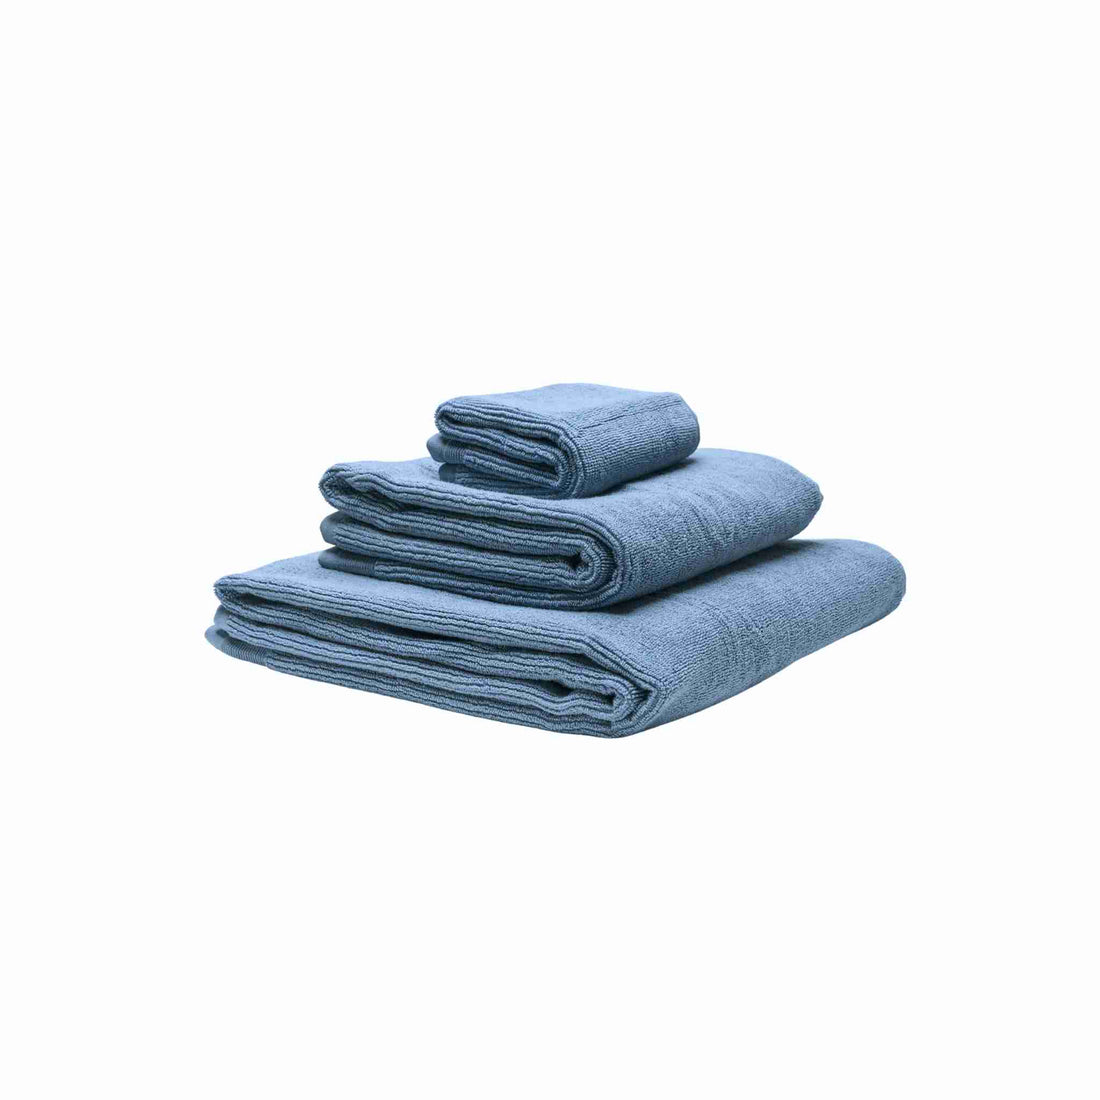 Økologiske håndklæder i farven blå